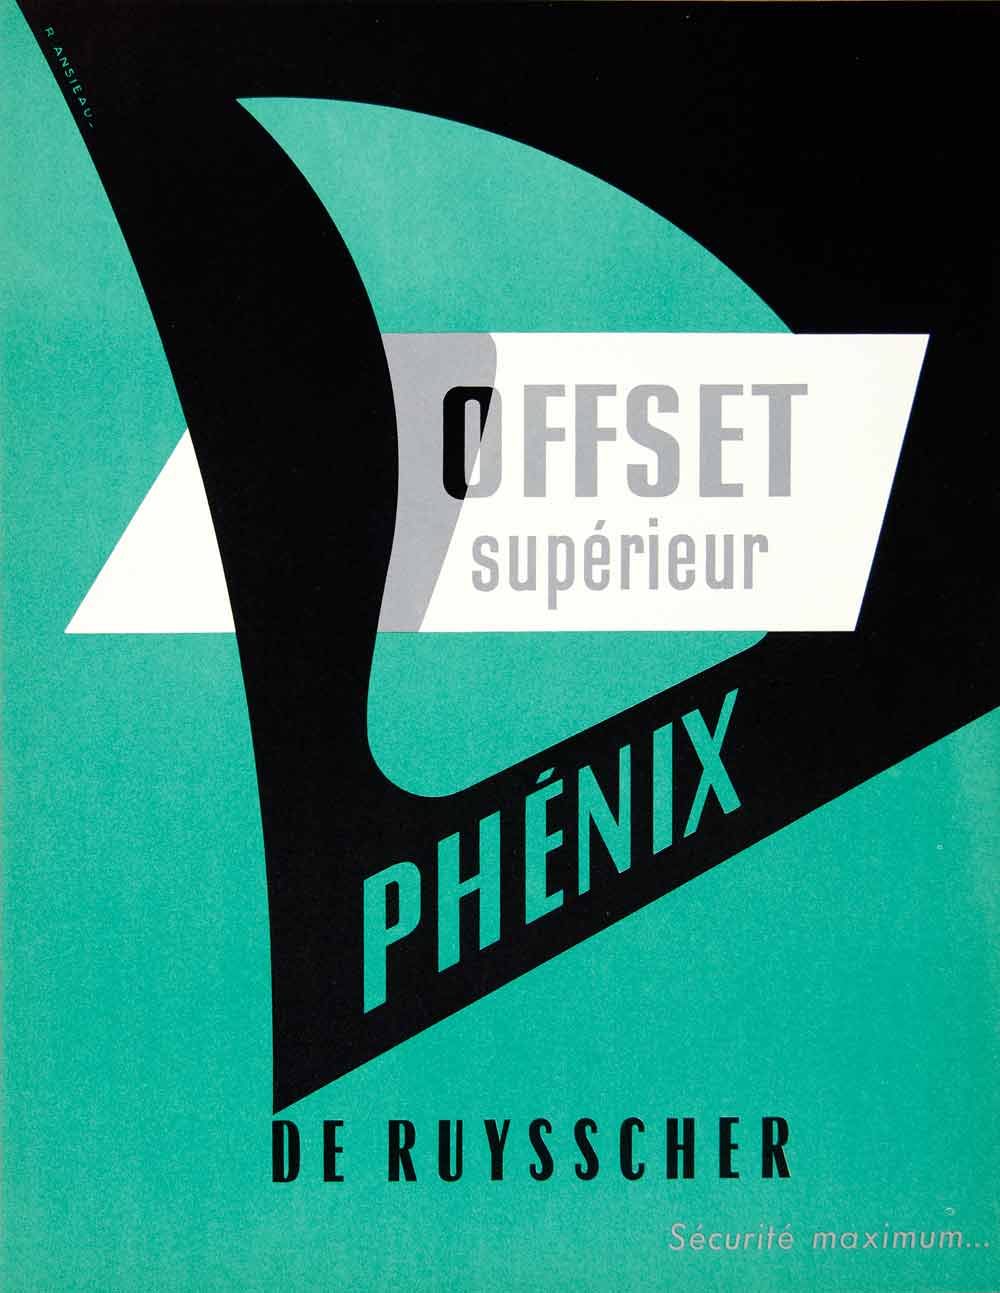 1957 Ad Phenix Offset Superieur De Ruysscher R Ansieau Paper French VEN1